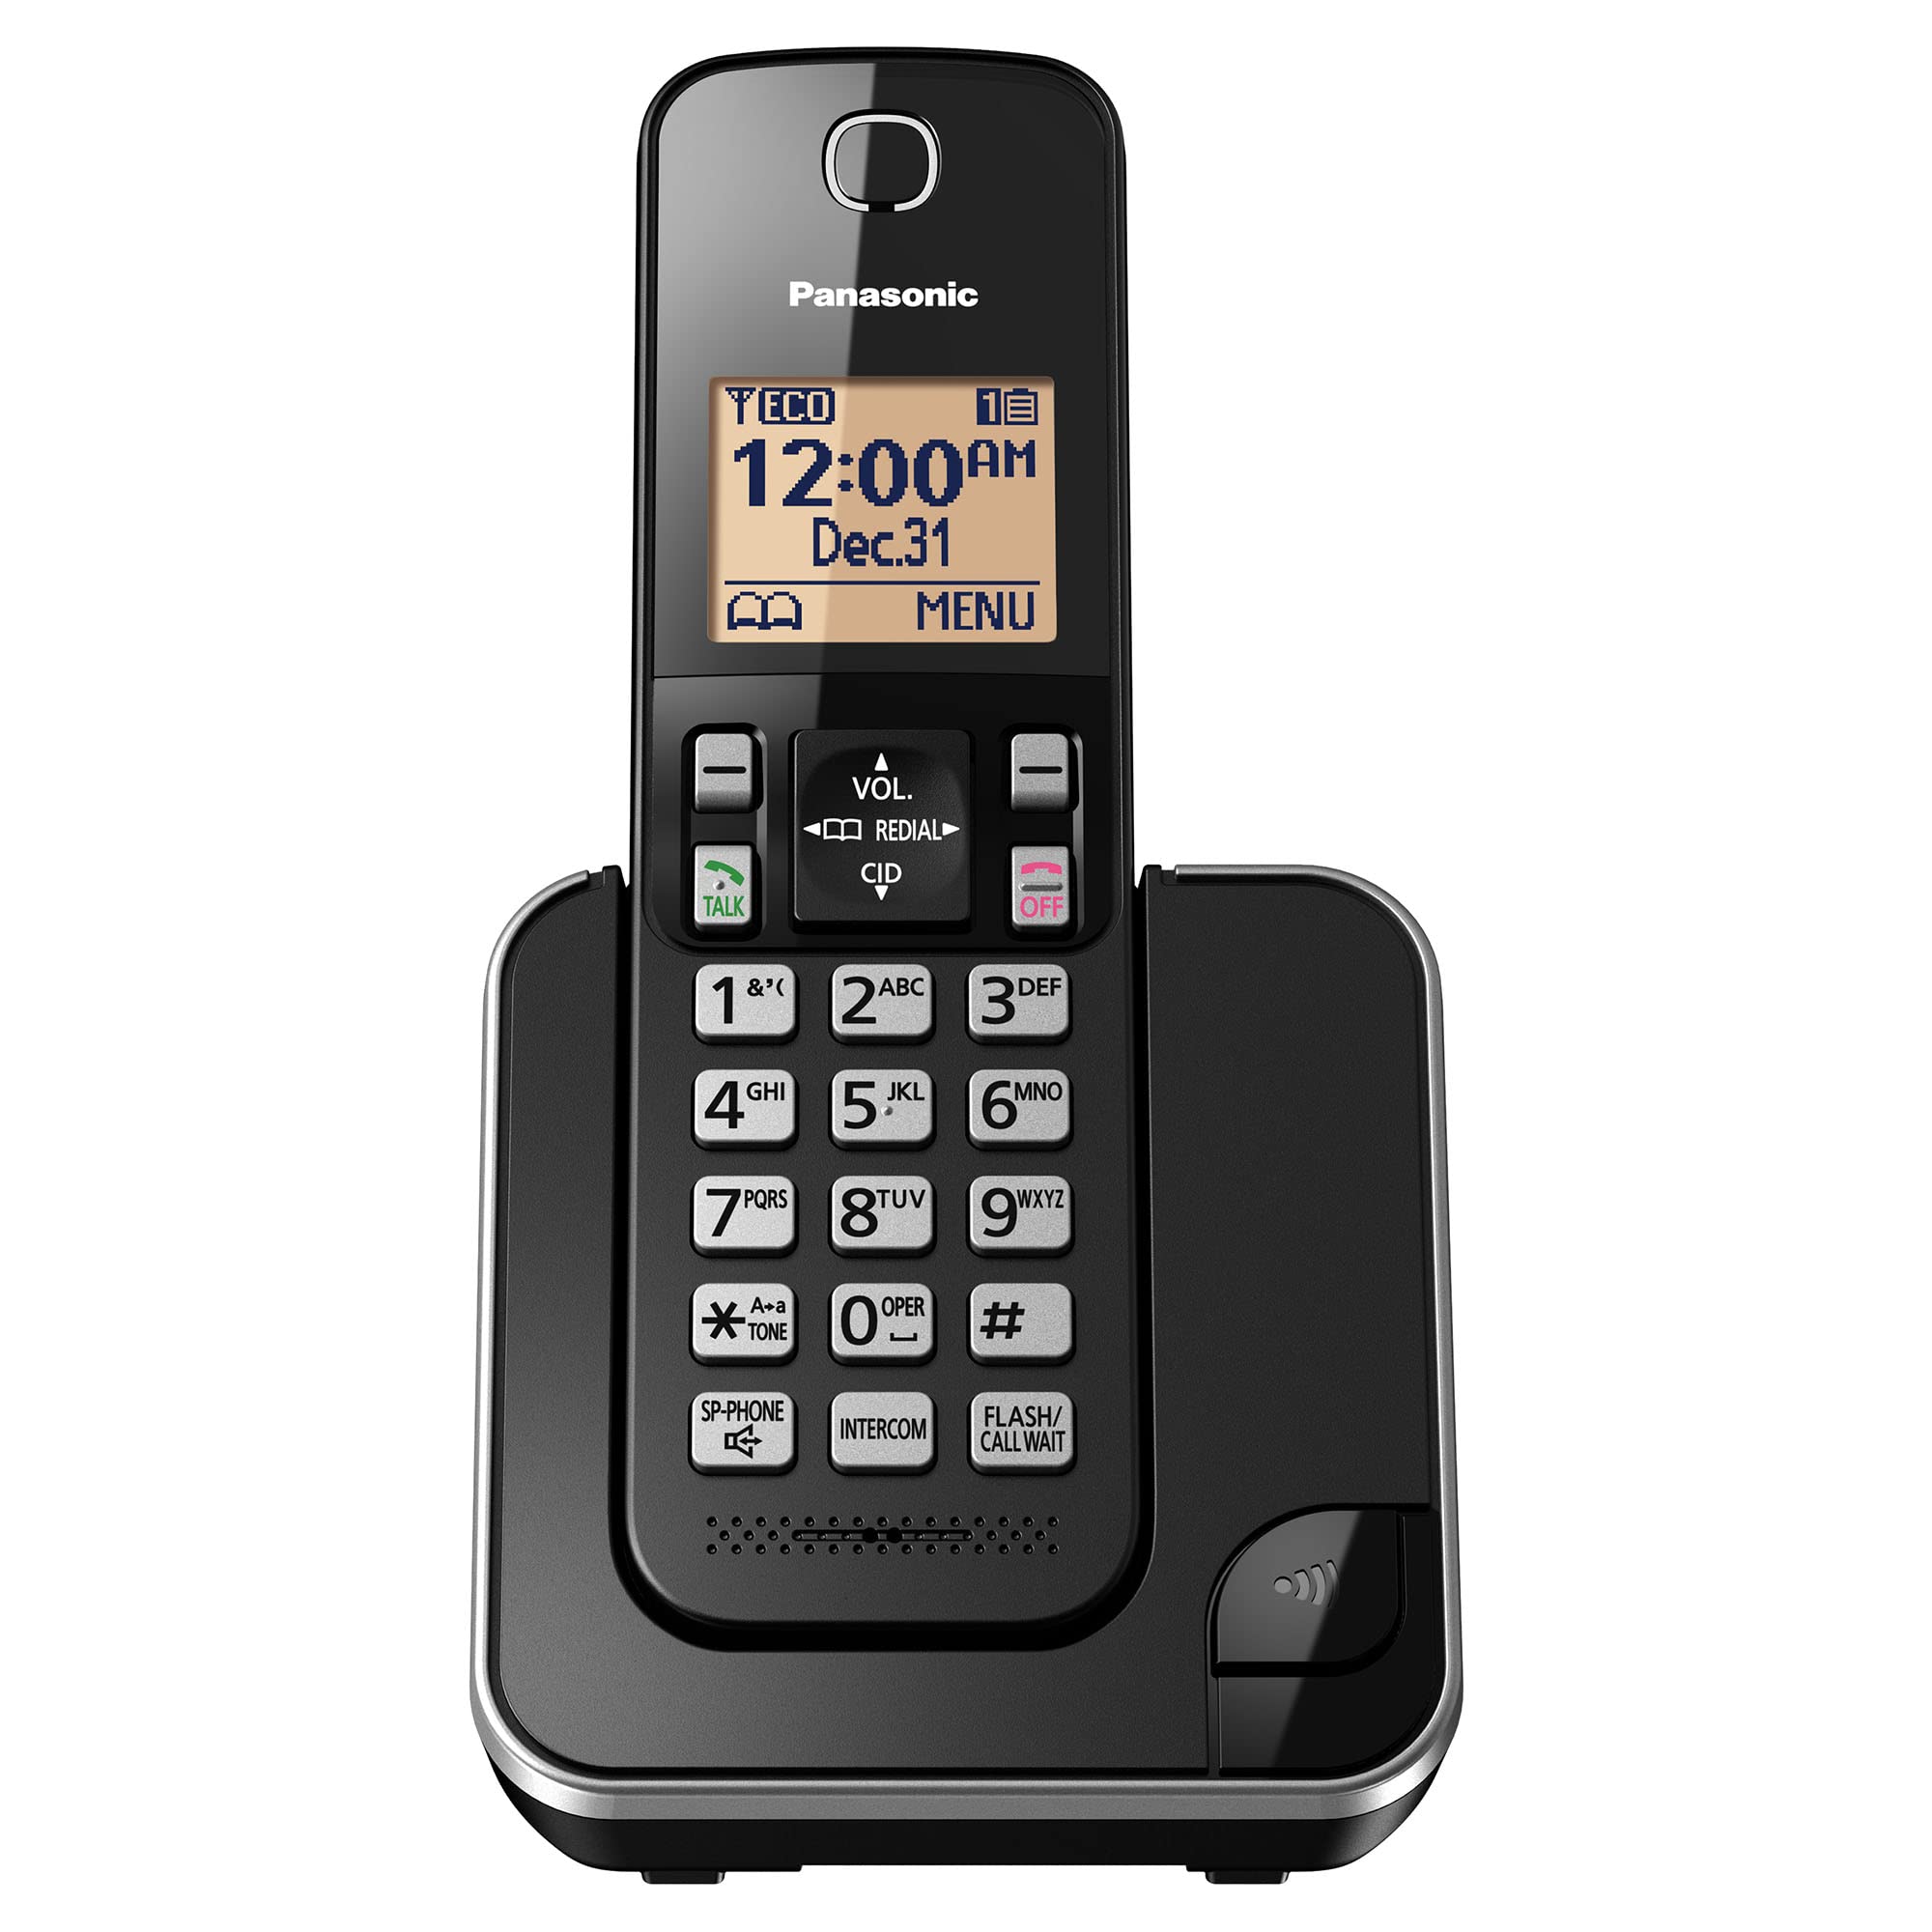 Panasonic Erweiterbares schnurloses Telefonsystem mit bernsteinfarbenem Display mit Hintergrundbeleuchtung und Anrufsperre